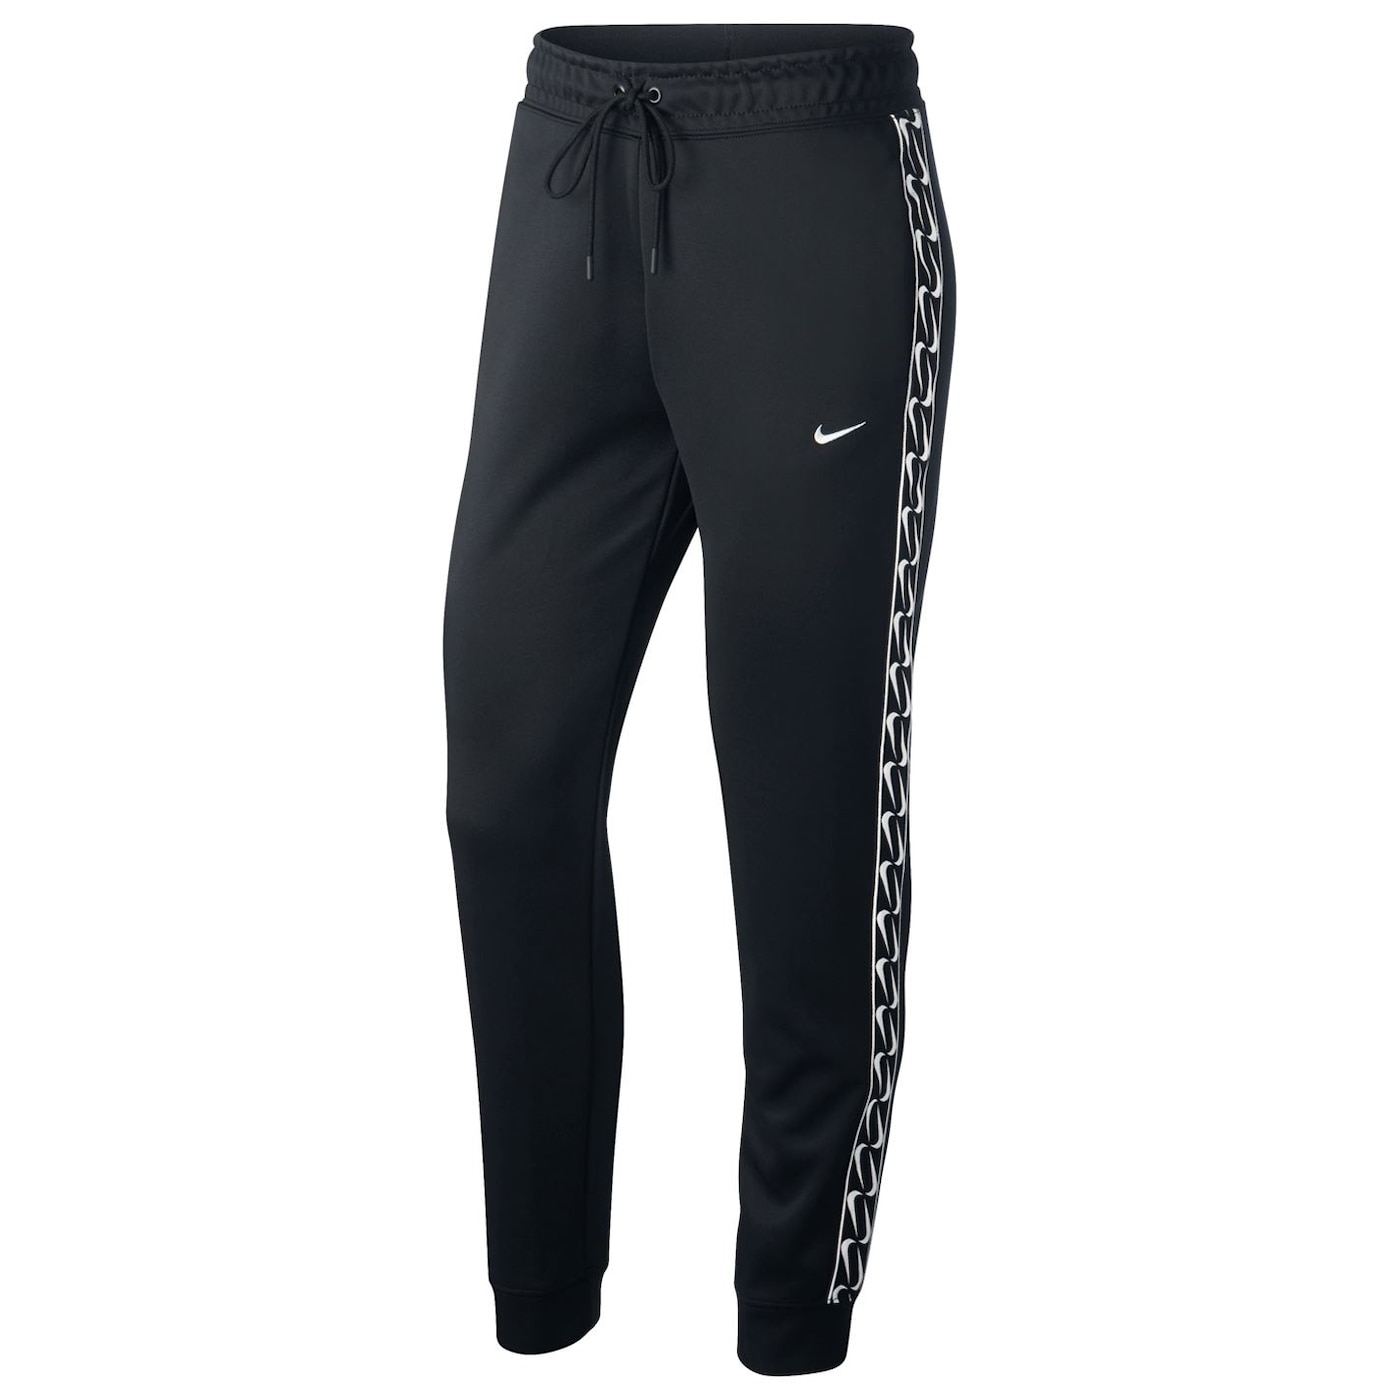 Жени  Дамско облекло  Анцузи  Анцузи дамски Nike Sportswear Logo Tape Jogging Pants Ladies 1423310-7691840